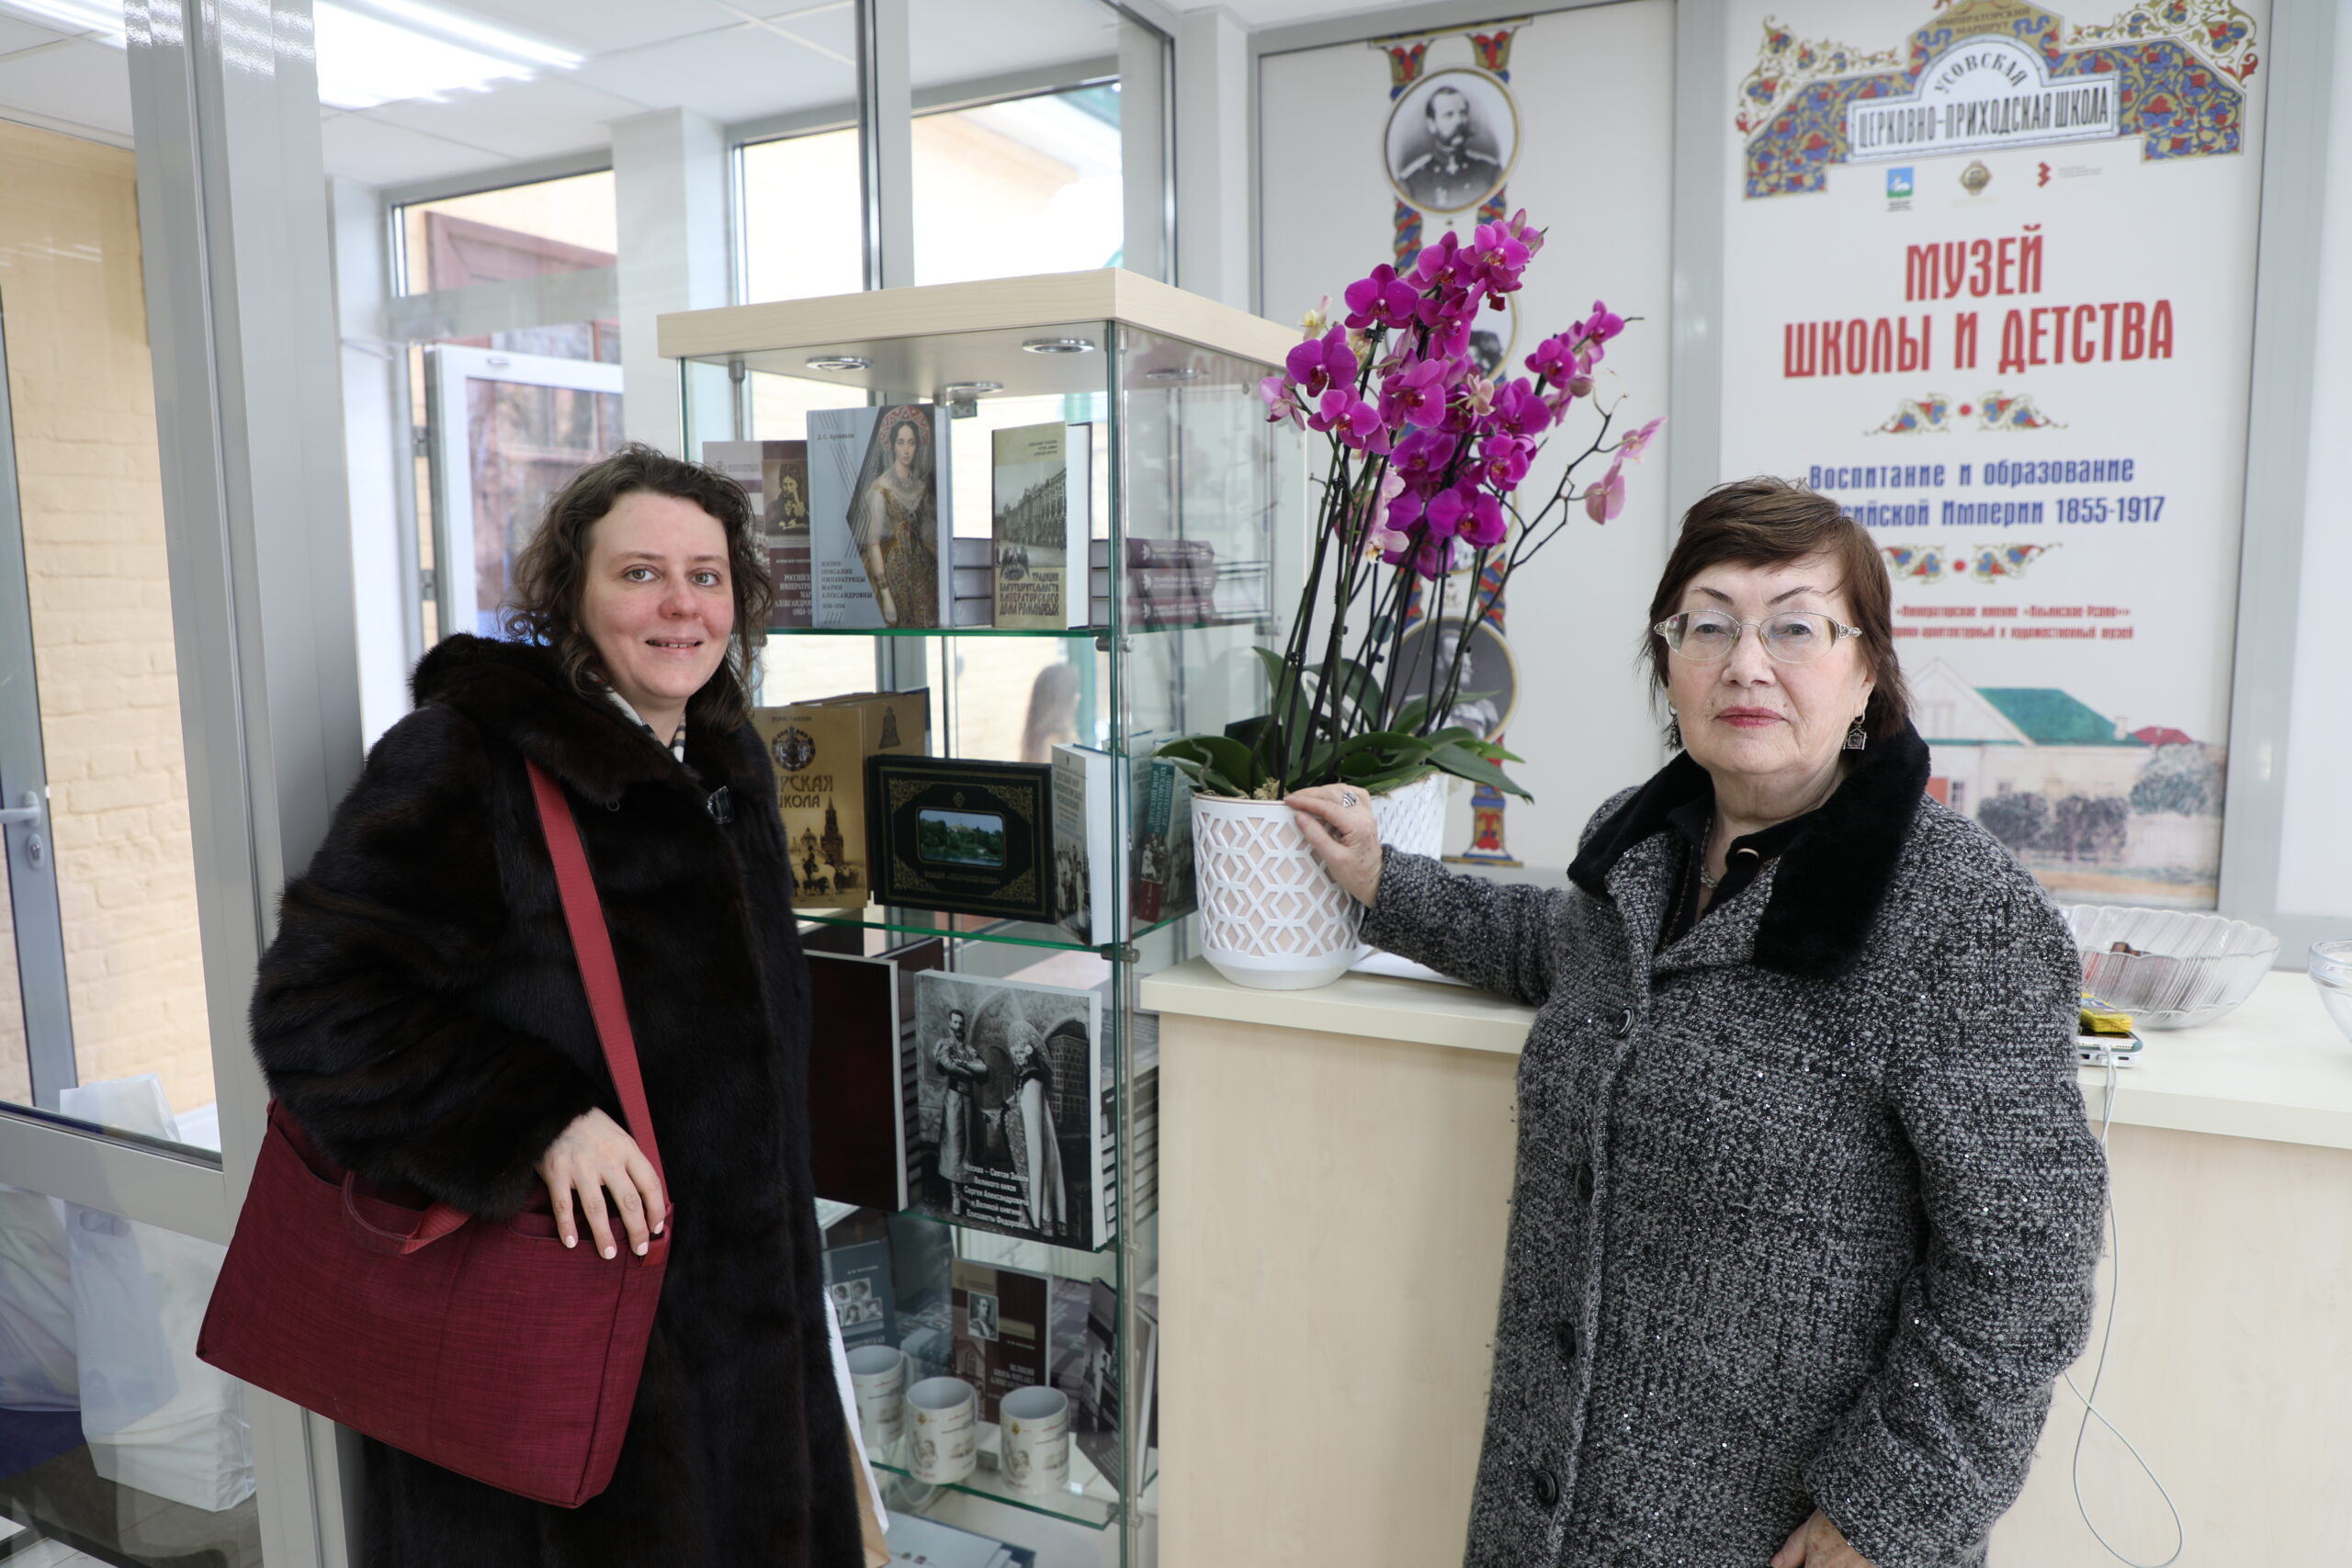 Музей школы и детства открылся в подмосковной императорской усадьбе Ильинское